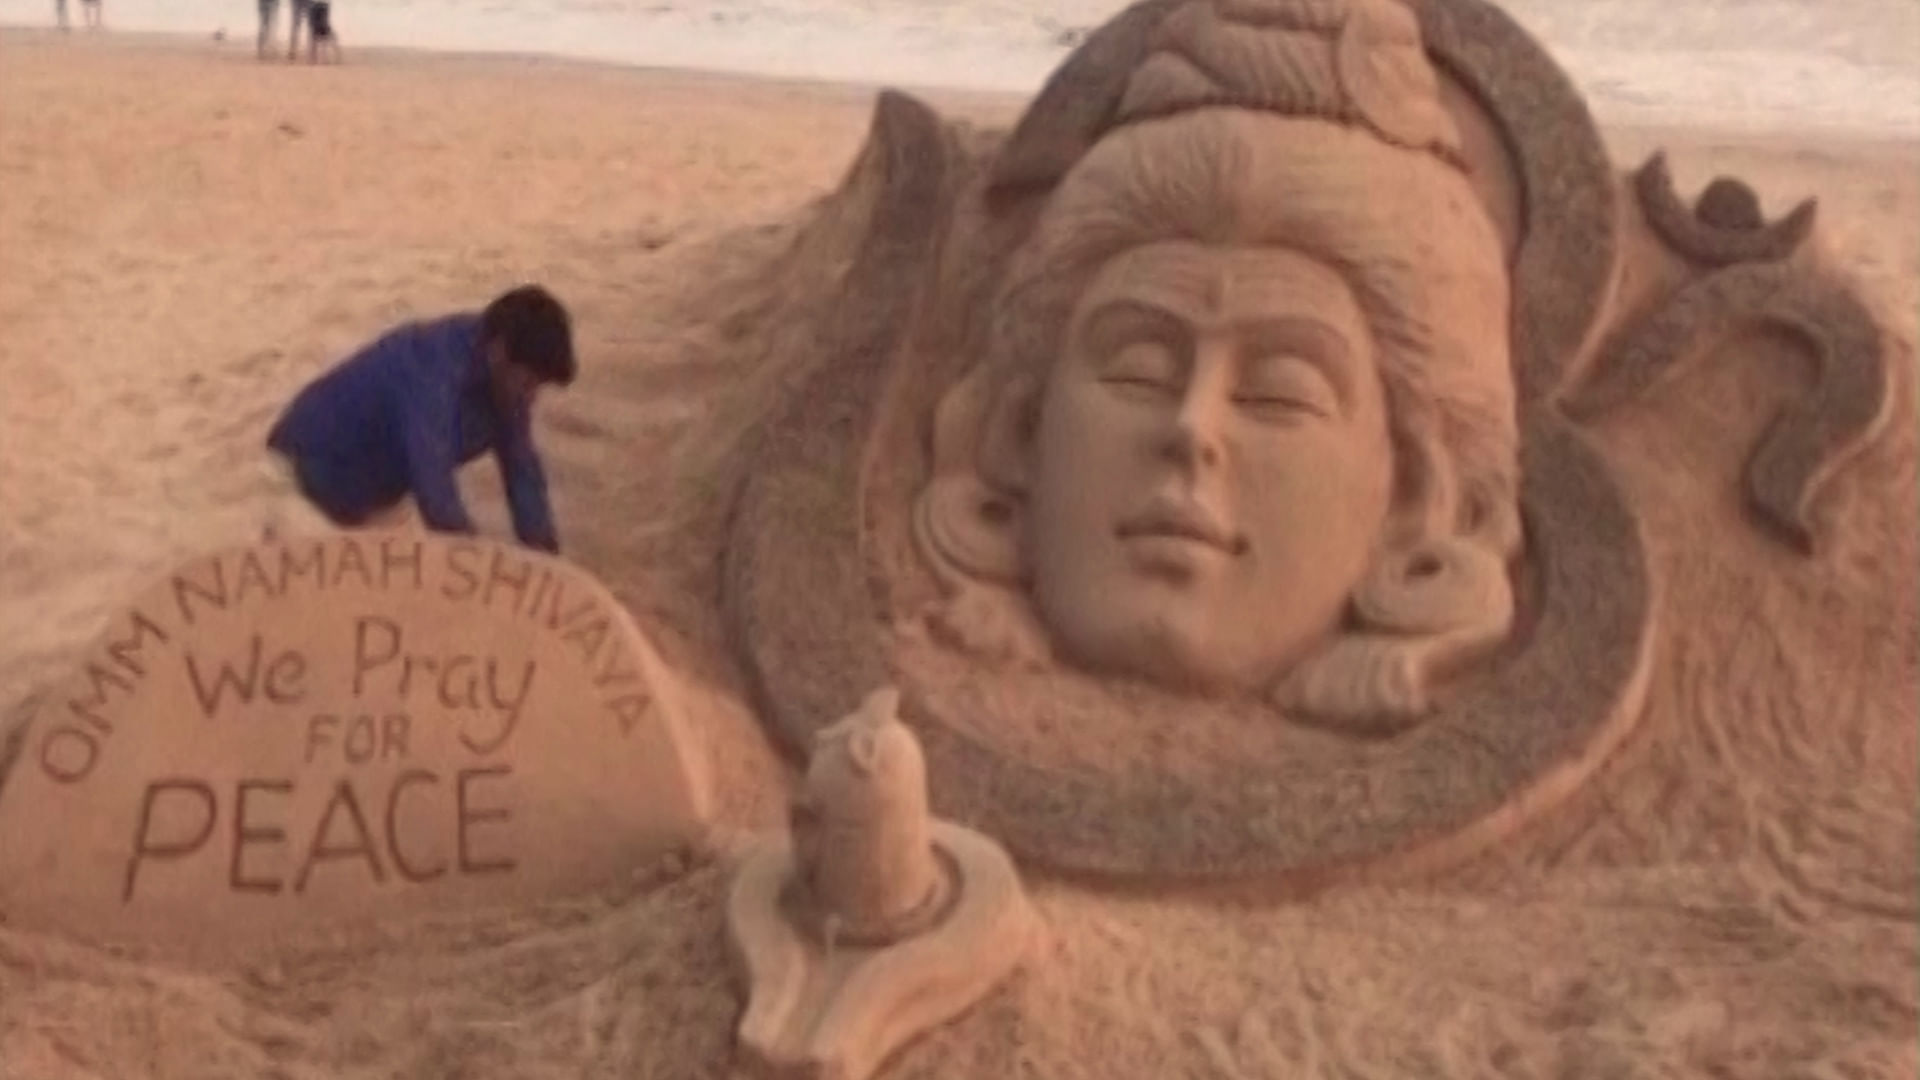 Sand sculpture of Lord Shiva made by Sudarsan Pattnaik at Puri Beach. (Photo: ANI screengrab)